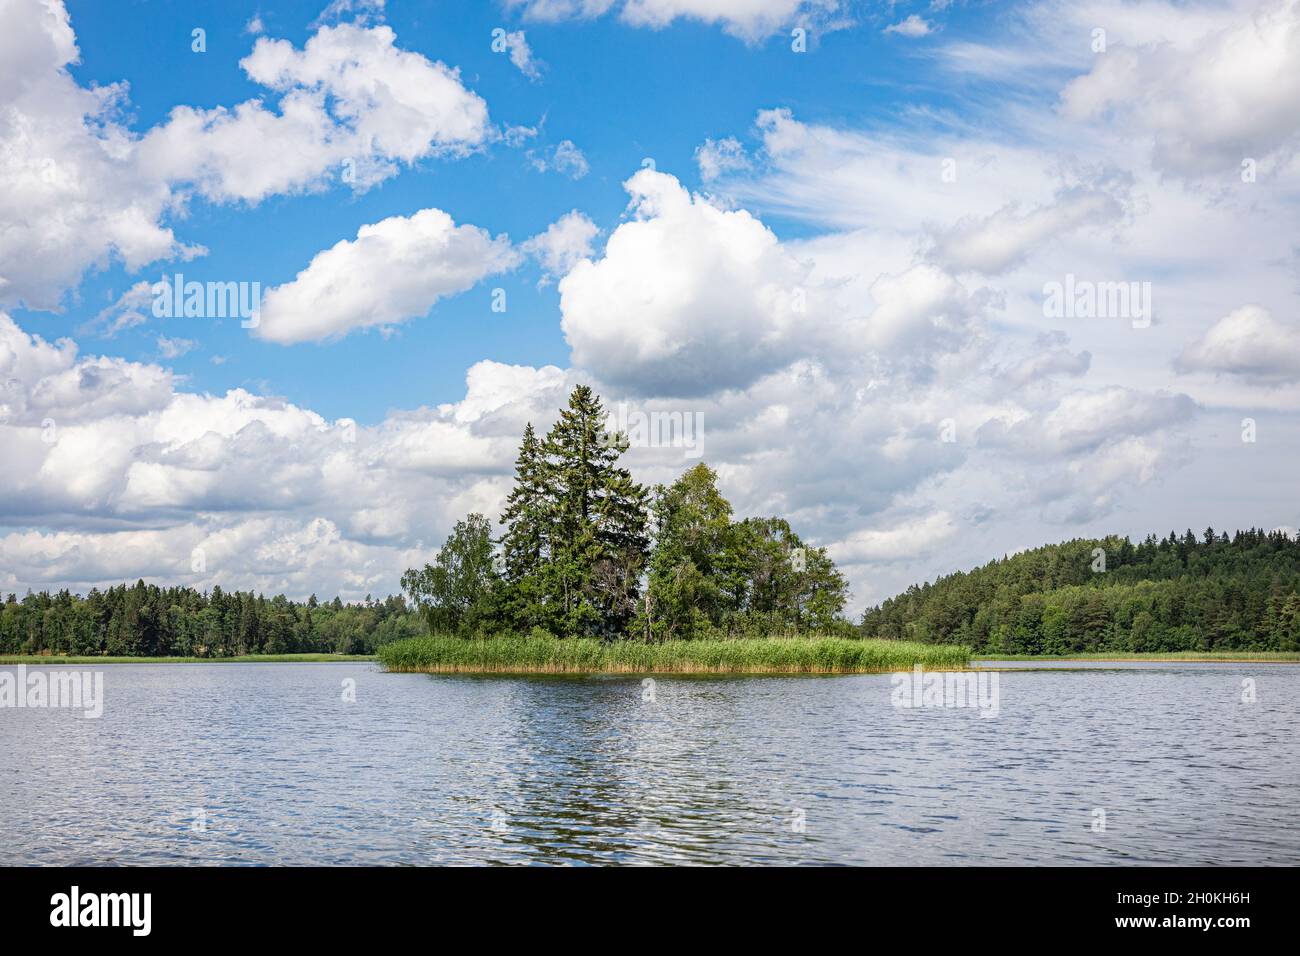 Vue sur un lac scandinave avec un ciel bleu avec des nuages blancs moelleux, des arbres verts en arrière-plan et une petite île au centre. Banque D'Images